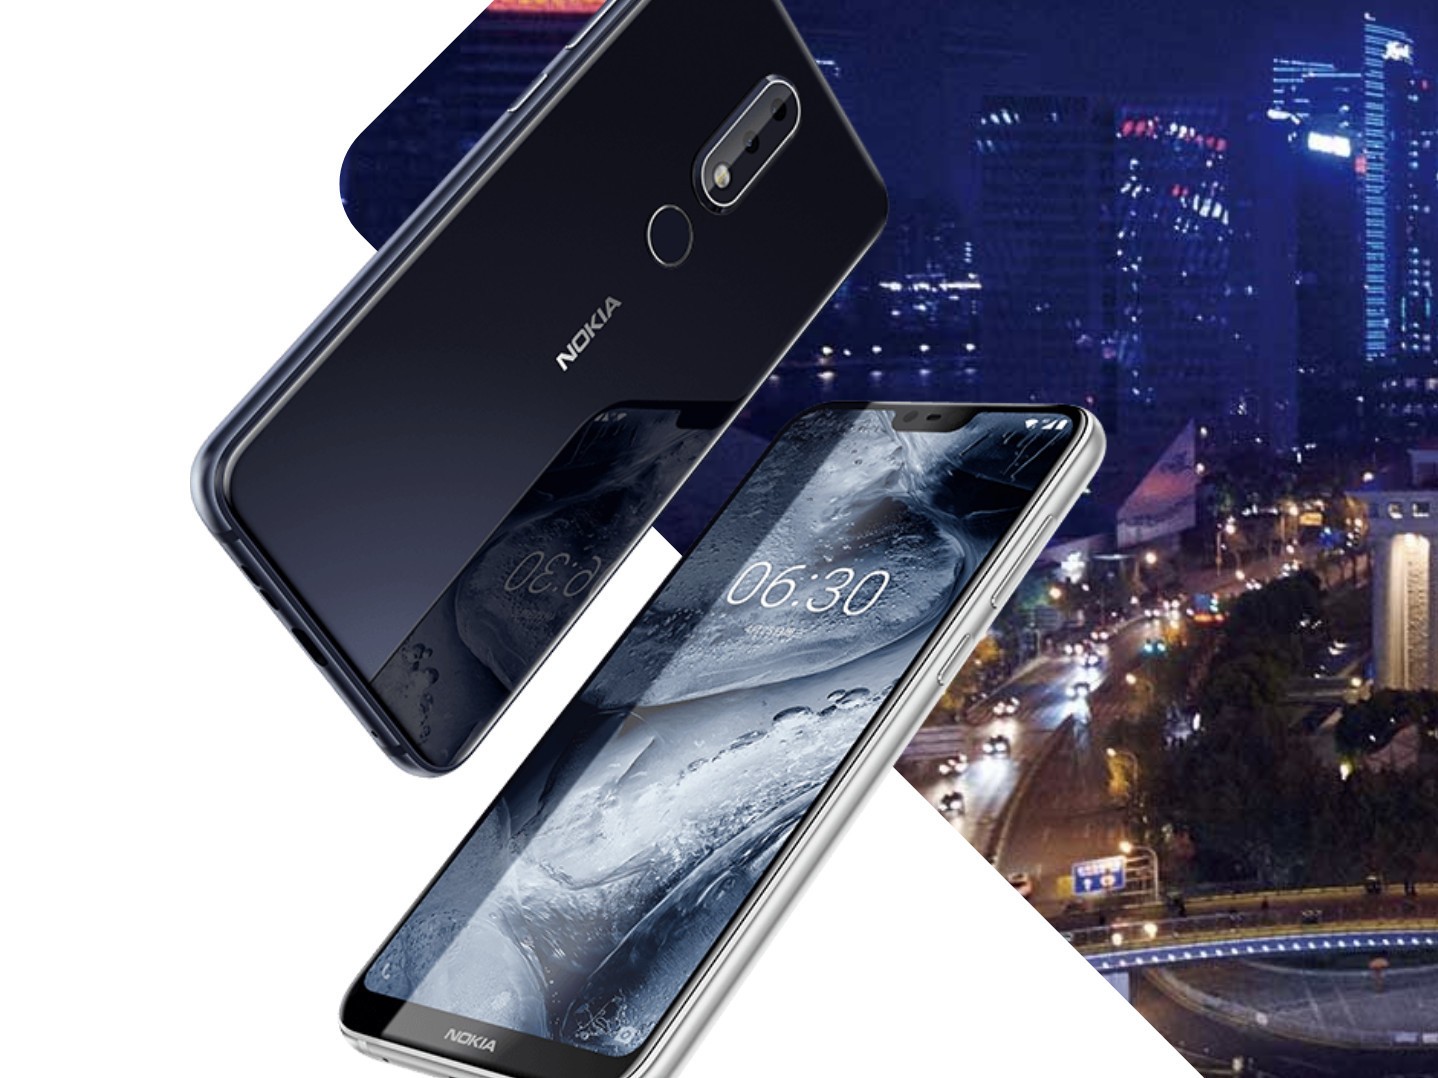 Soal Nokia X6 ke Indonesia, HMD Global: tunggu tanggal mainnya